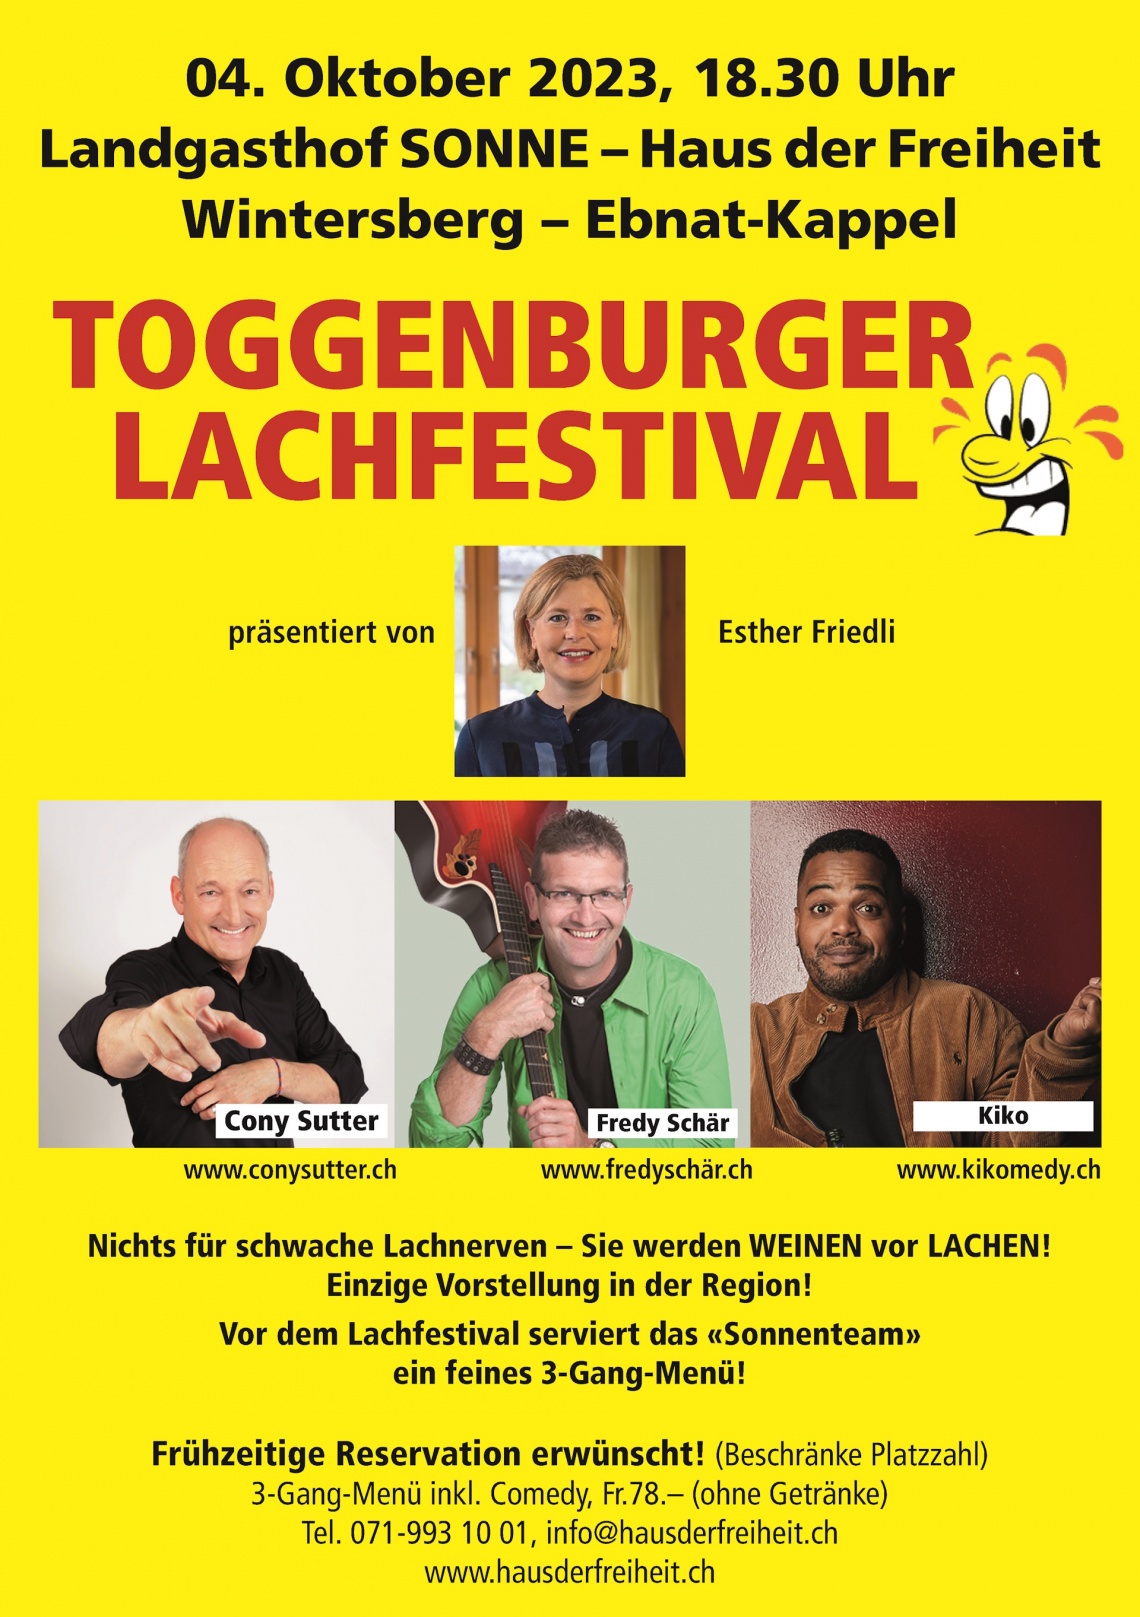 Toggenburger Lachfestival (Mittwoch, 04.10.2023 um  18.30 Uhr)